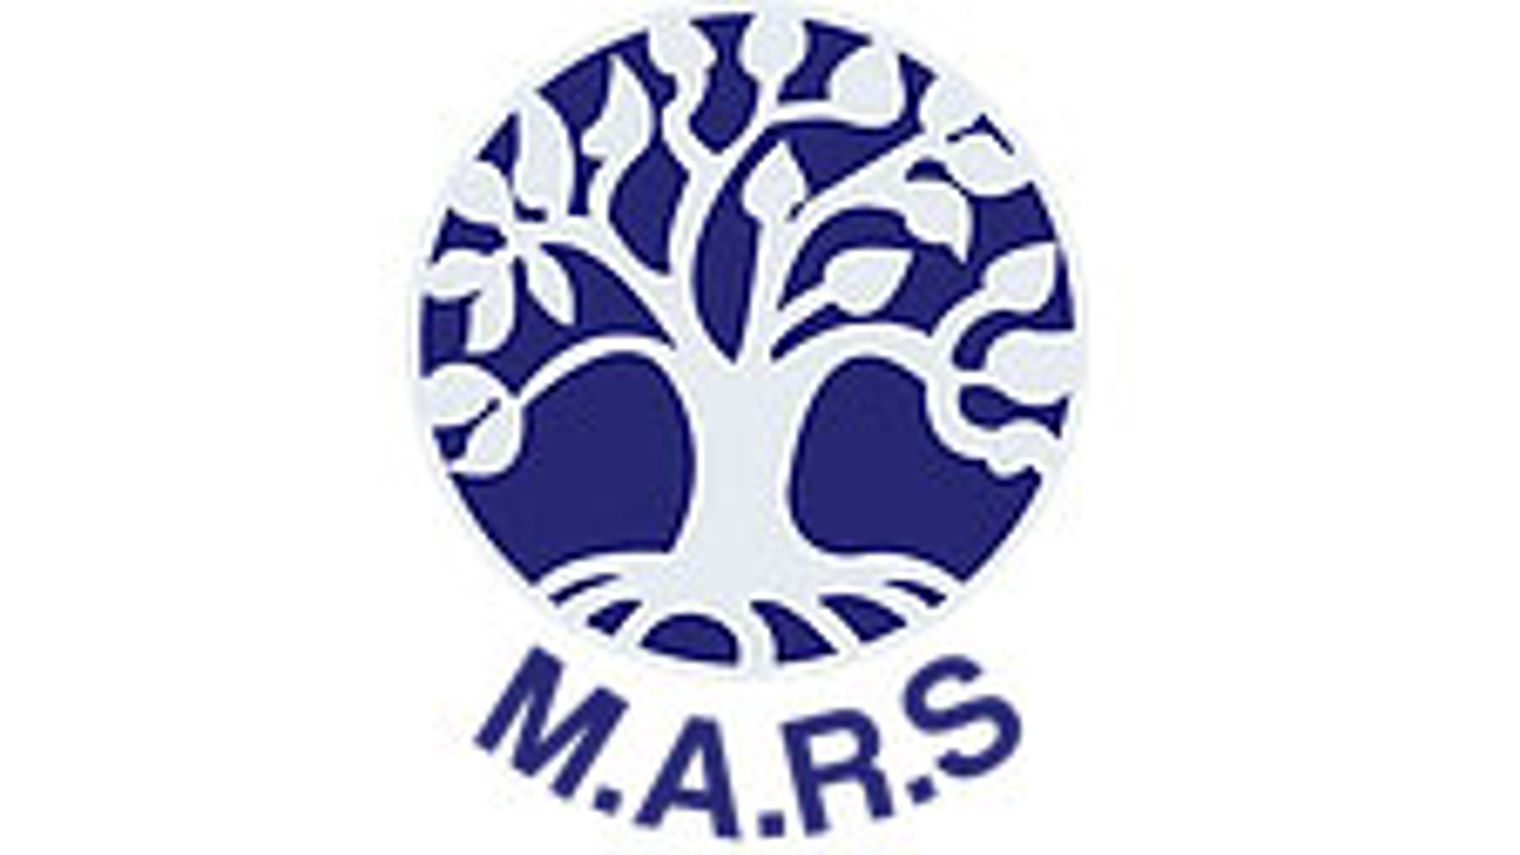 Mars Association of Regional Schools